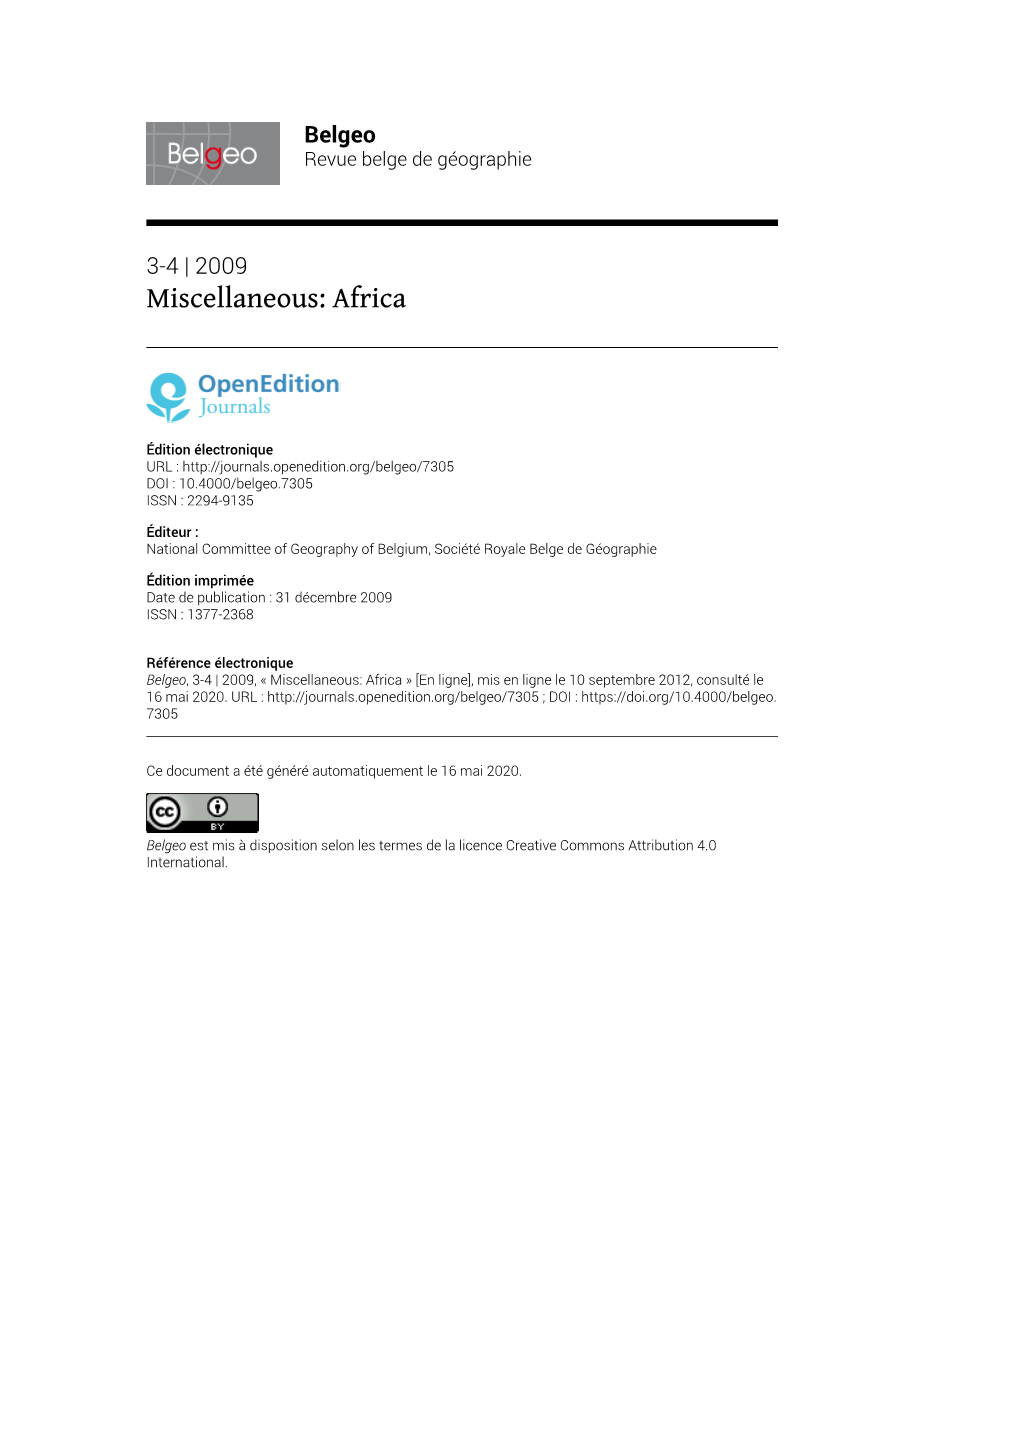 Belgeo, 3-4 | 2009, « Miscellaneous: Africa » [En Ligne], Mis En Ligne Le 10 Septembre 2012, Consulté Le 16 Mai 2020